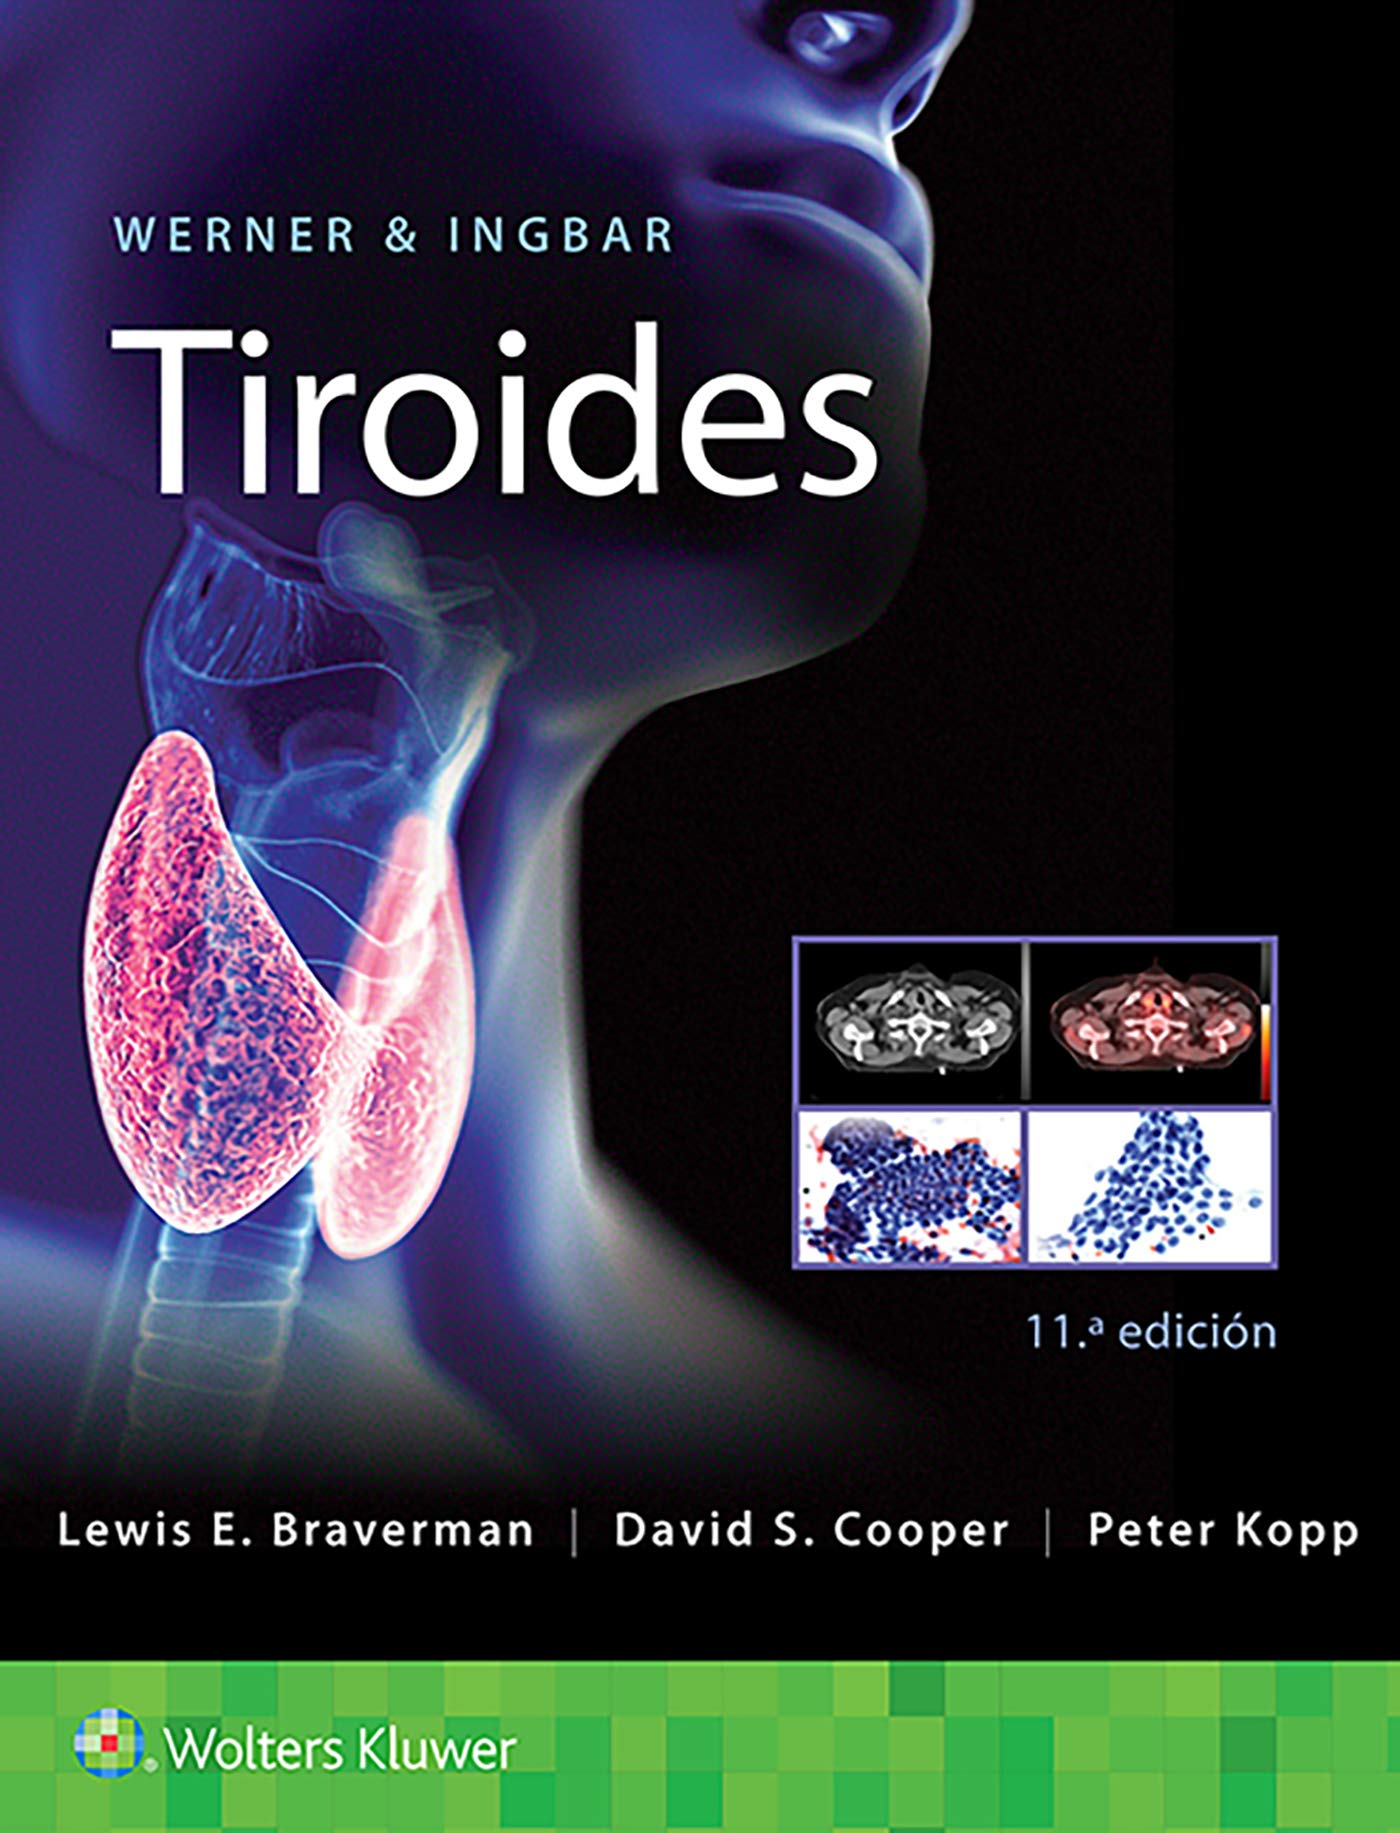 WERNER & INGBAR Tiroides